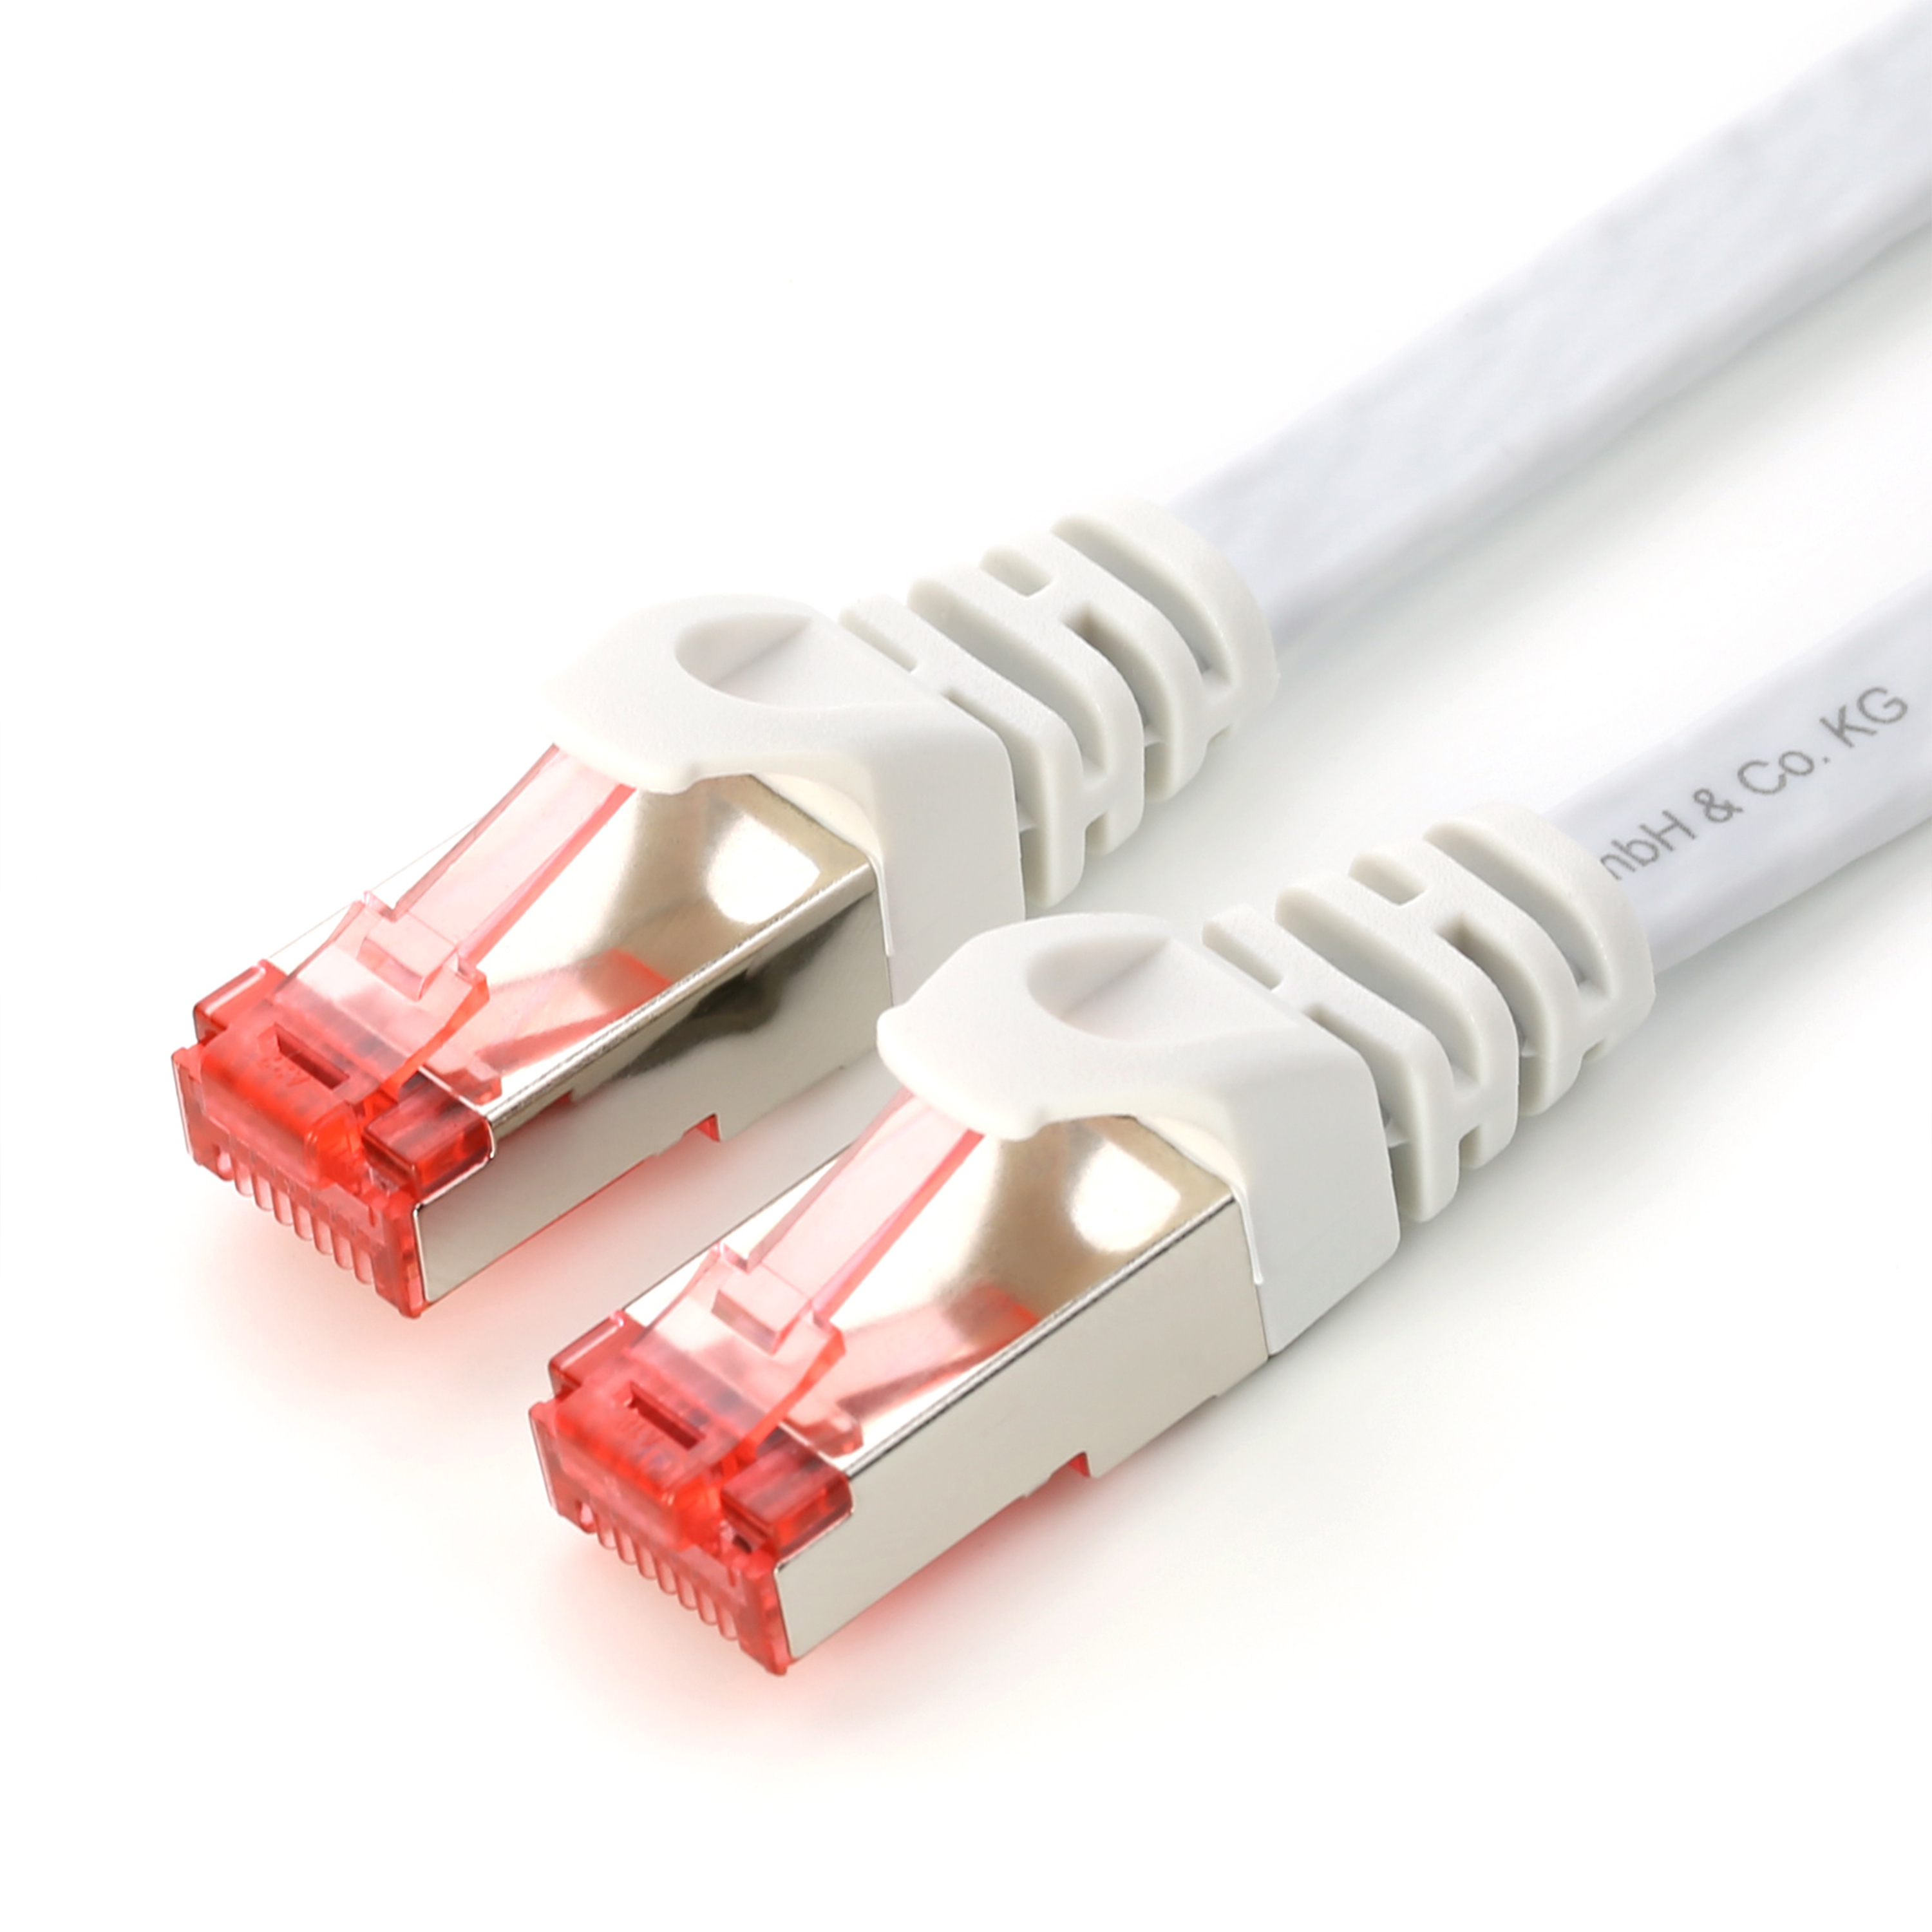 CSL 0,25m Flachband Patchkabel Stecker, Kabel, Cat7 LAN weiß weiß weiß-roter FTP